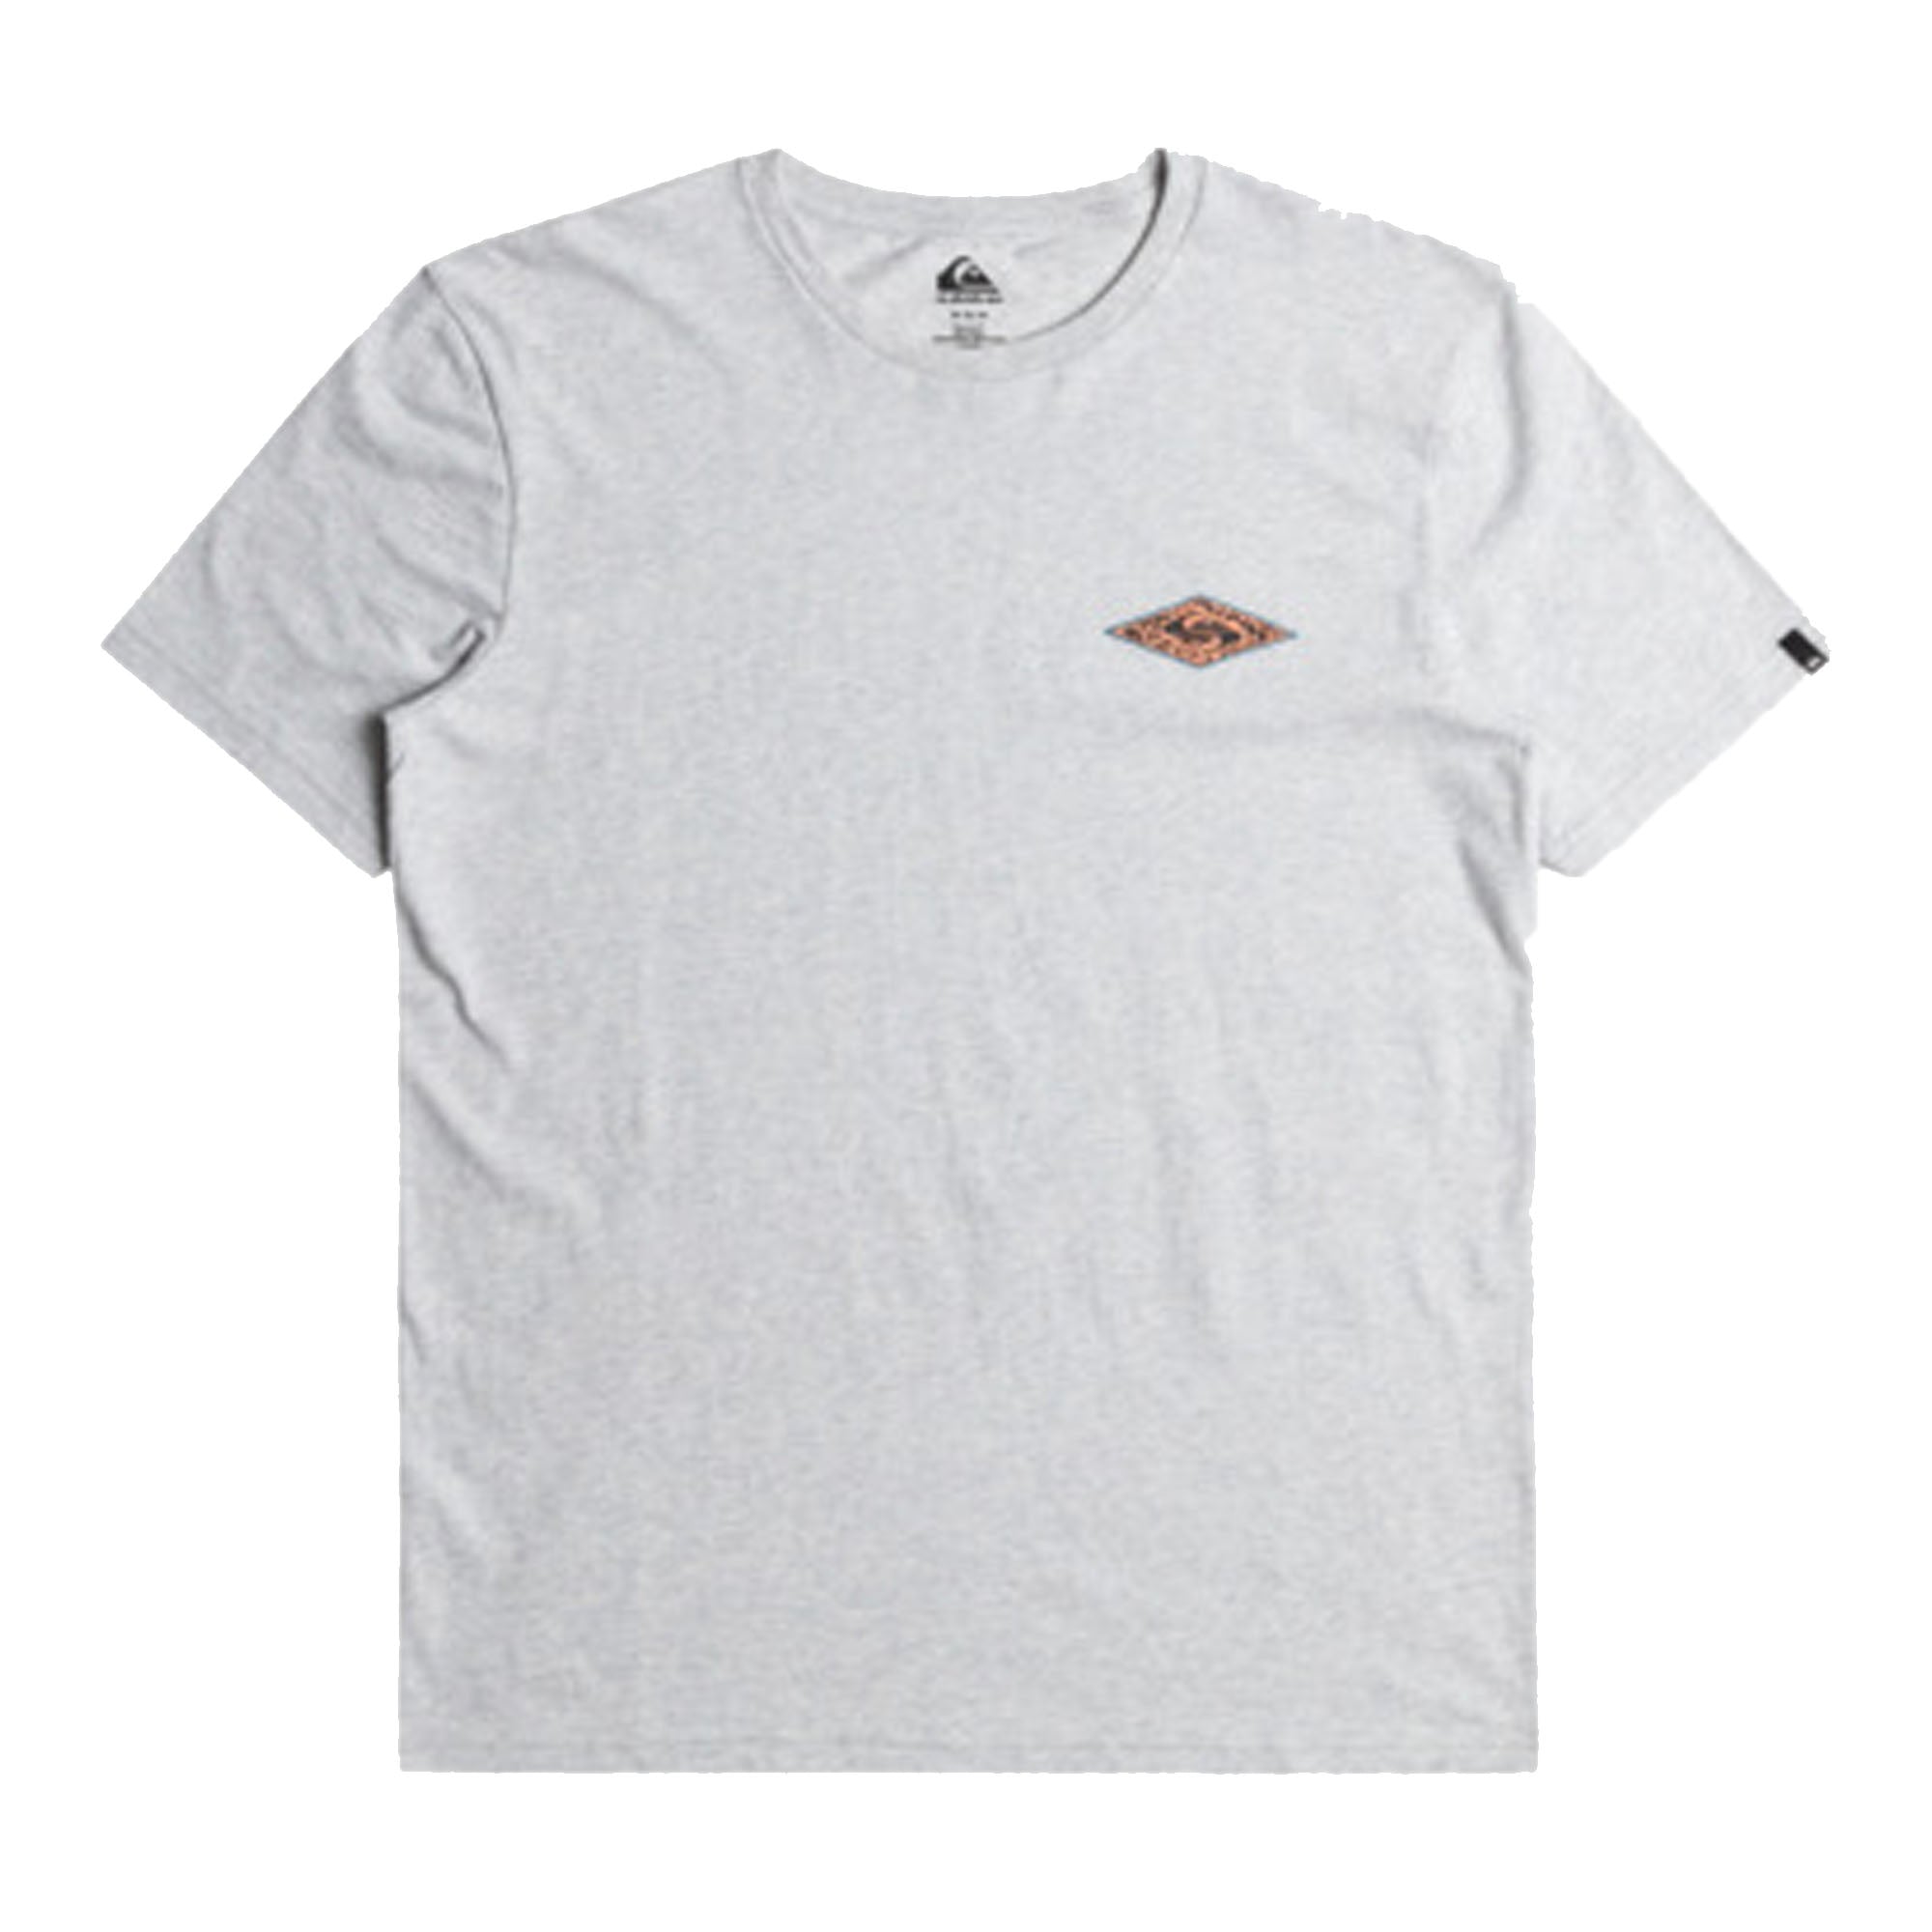 Quiksilver Fossilized Men's S/S T-Shirt